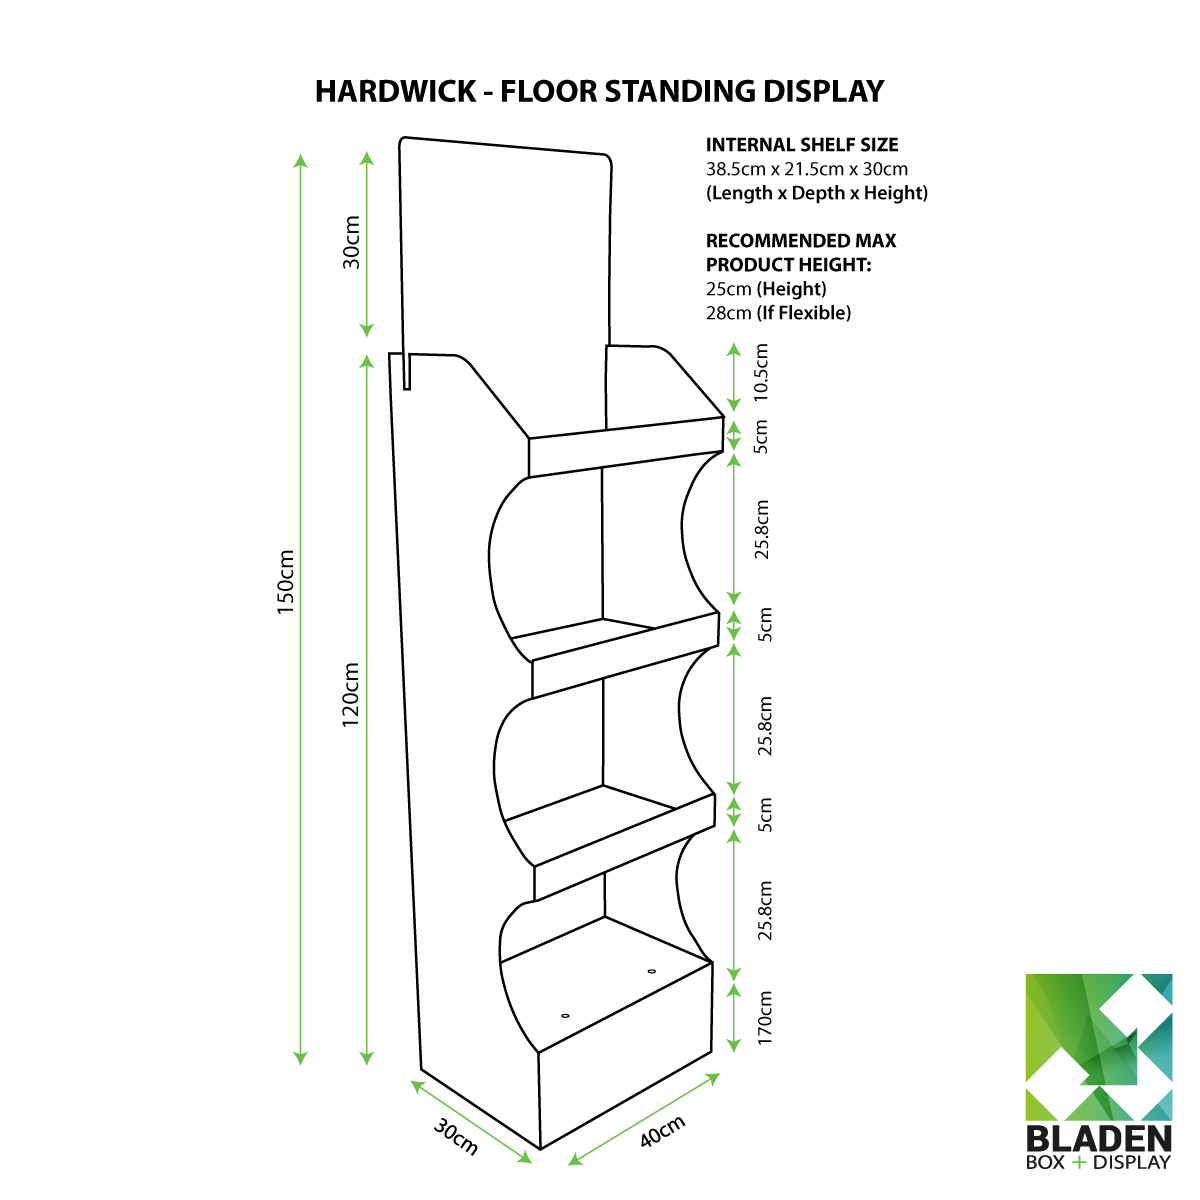 Floor Standing Display - Hardwick - Line Drawing